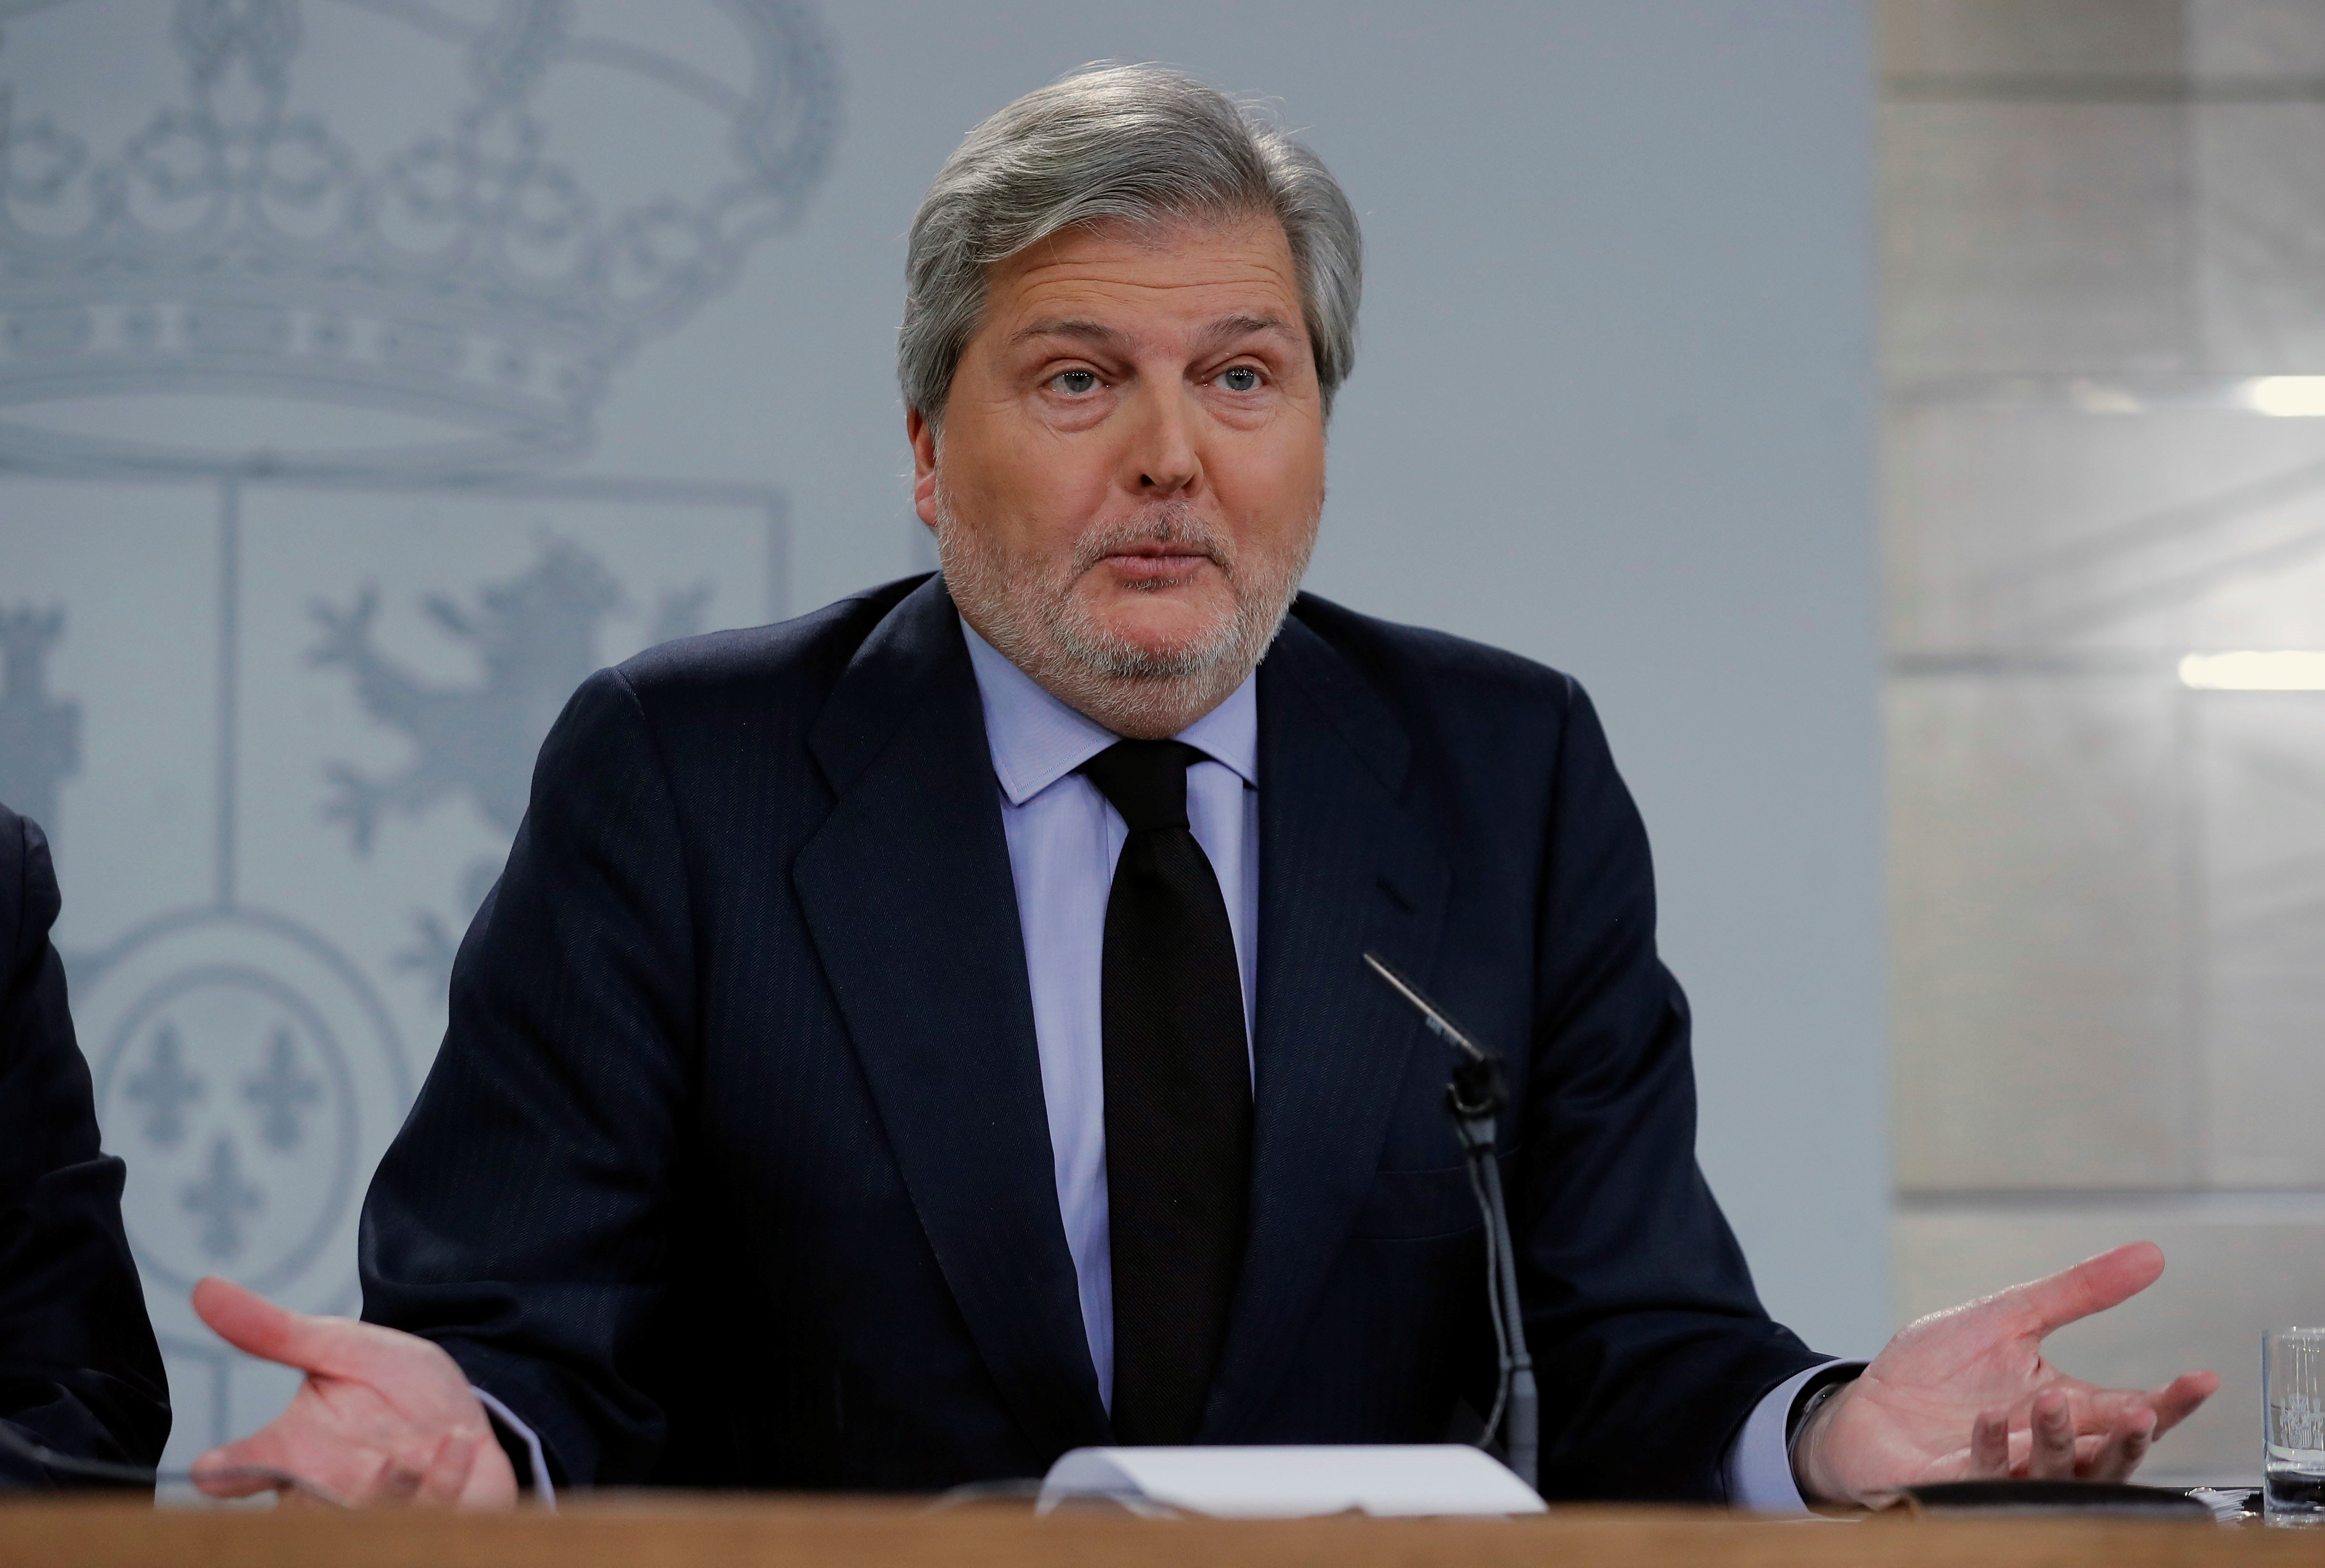 El govern espanyol no tindrà "cap contemplació" amb Puigdemont